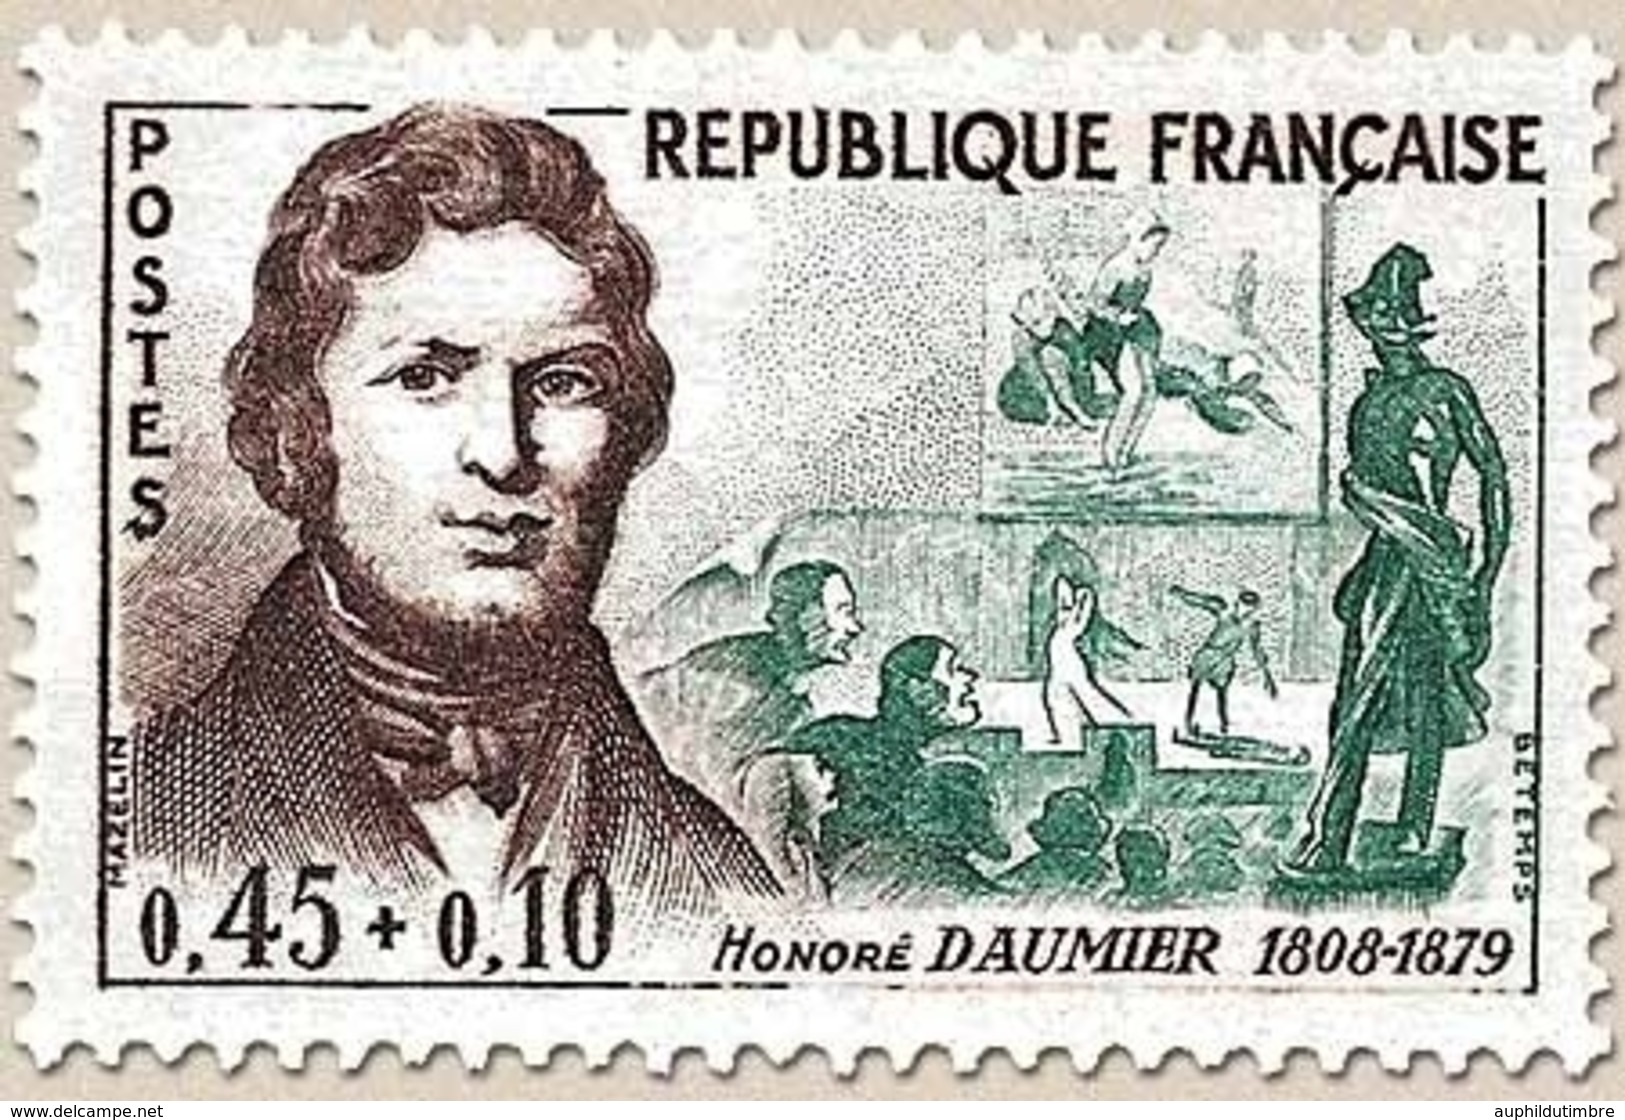 Célébrités. Honoré Daumier Et Ses œuvres : Laveuses, Le Drame, Ratapoil  45c. + 10c. Y1299 - Neufs